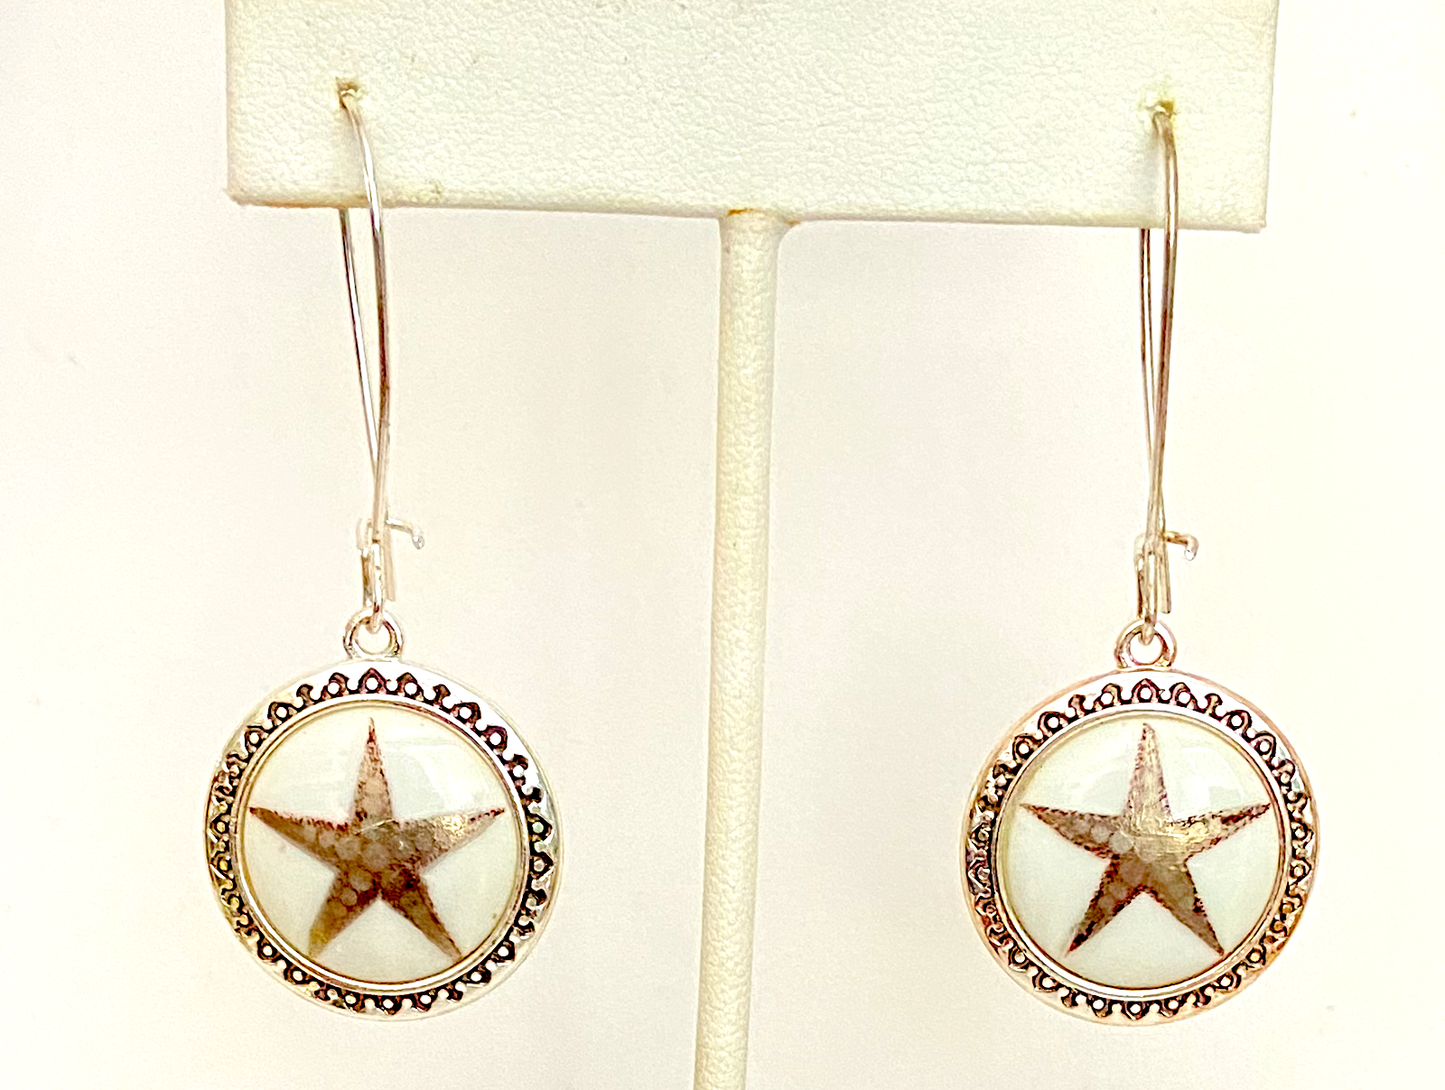 Star Earrings porcelain pendants in a stainless steel bezel star lover jewelry